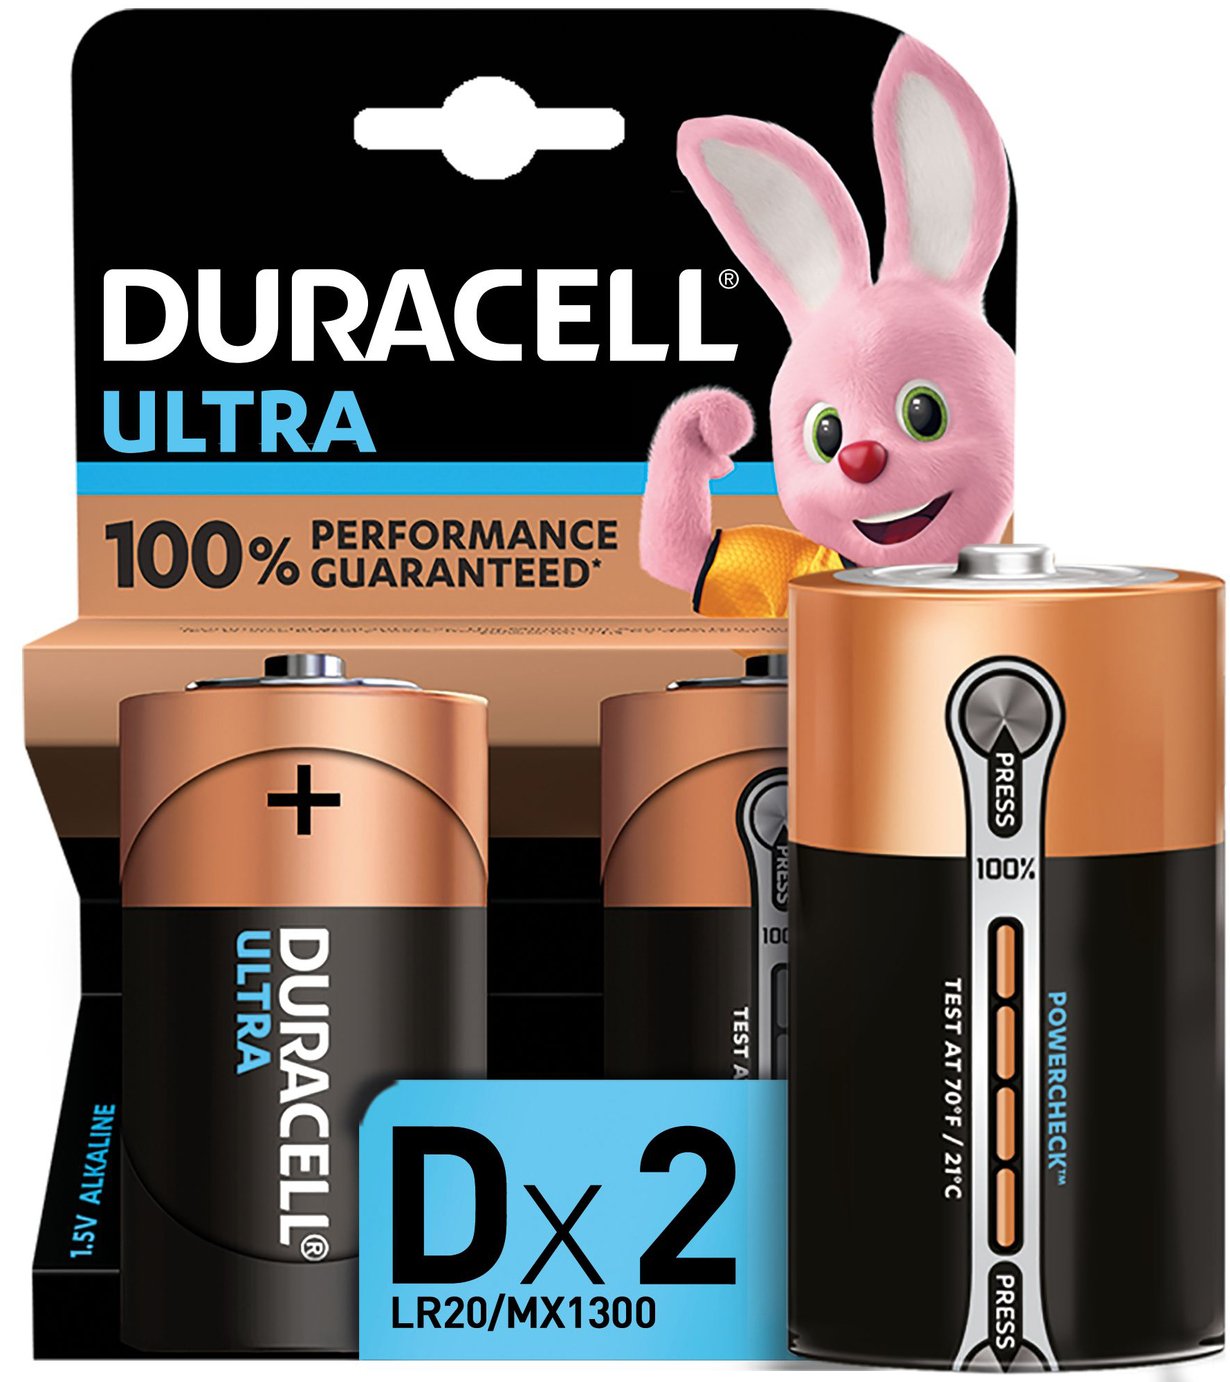 Duracell Ultra Alkaline D Batteries Review